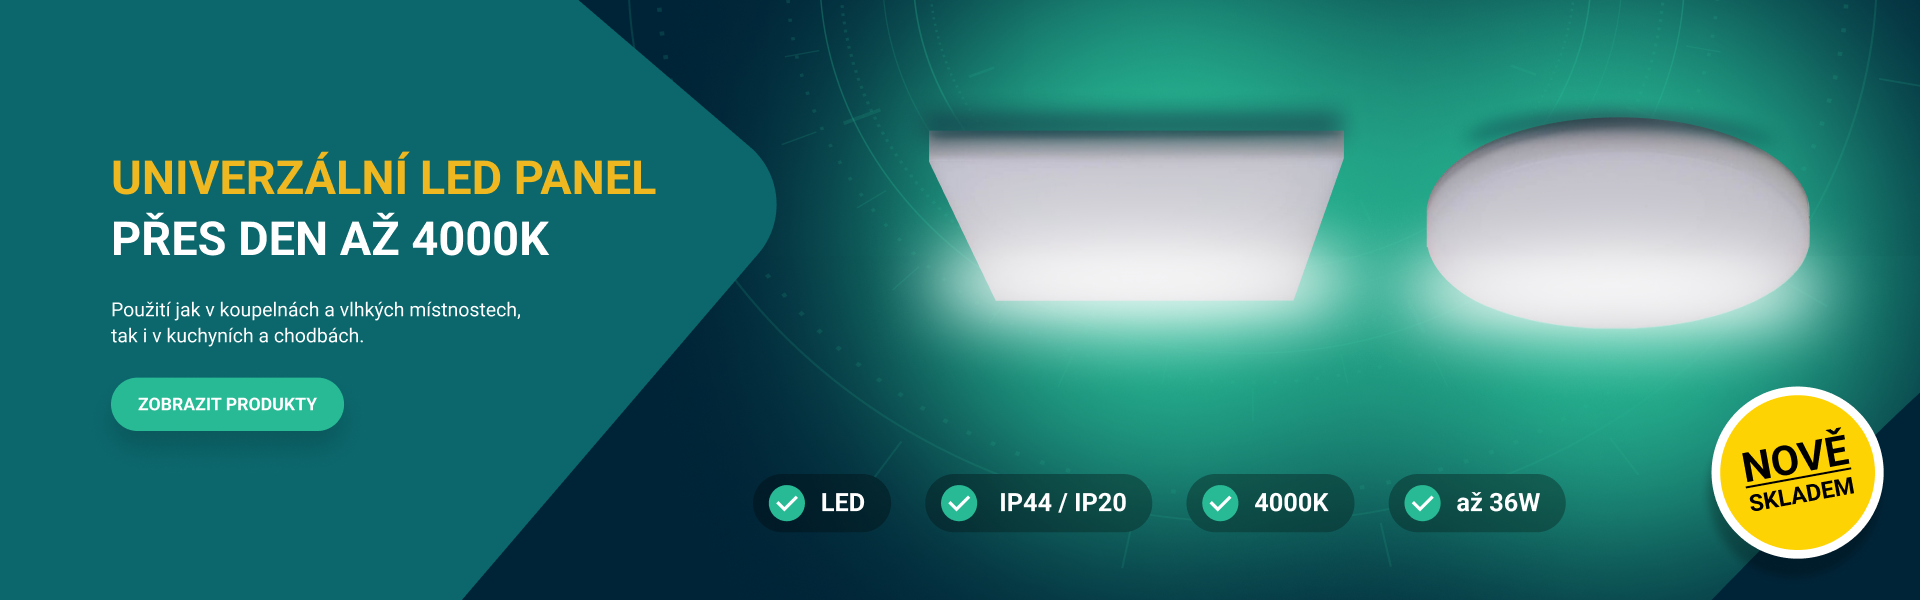 Vivalux - Univerzálni LED panel